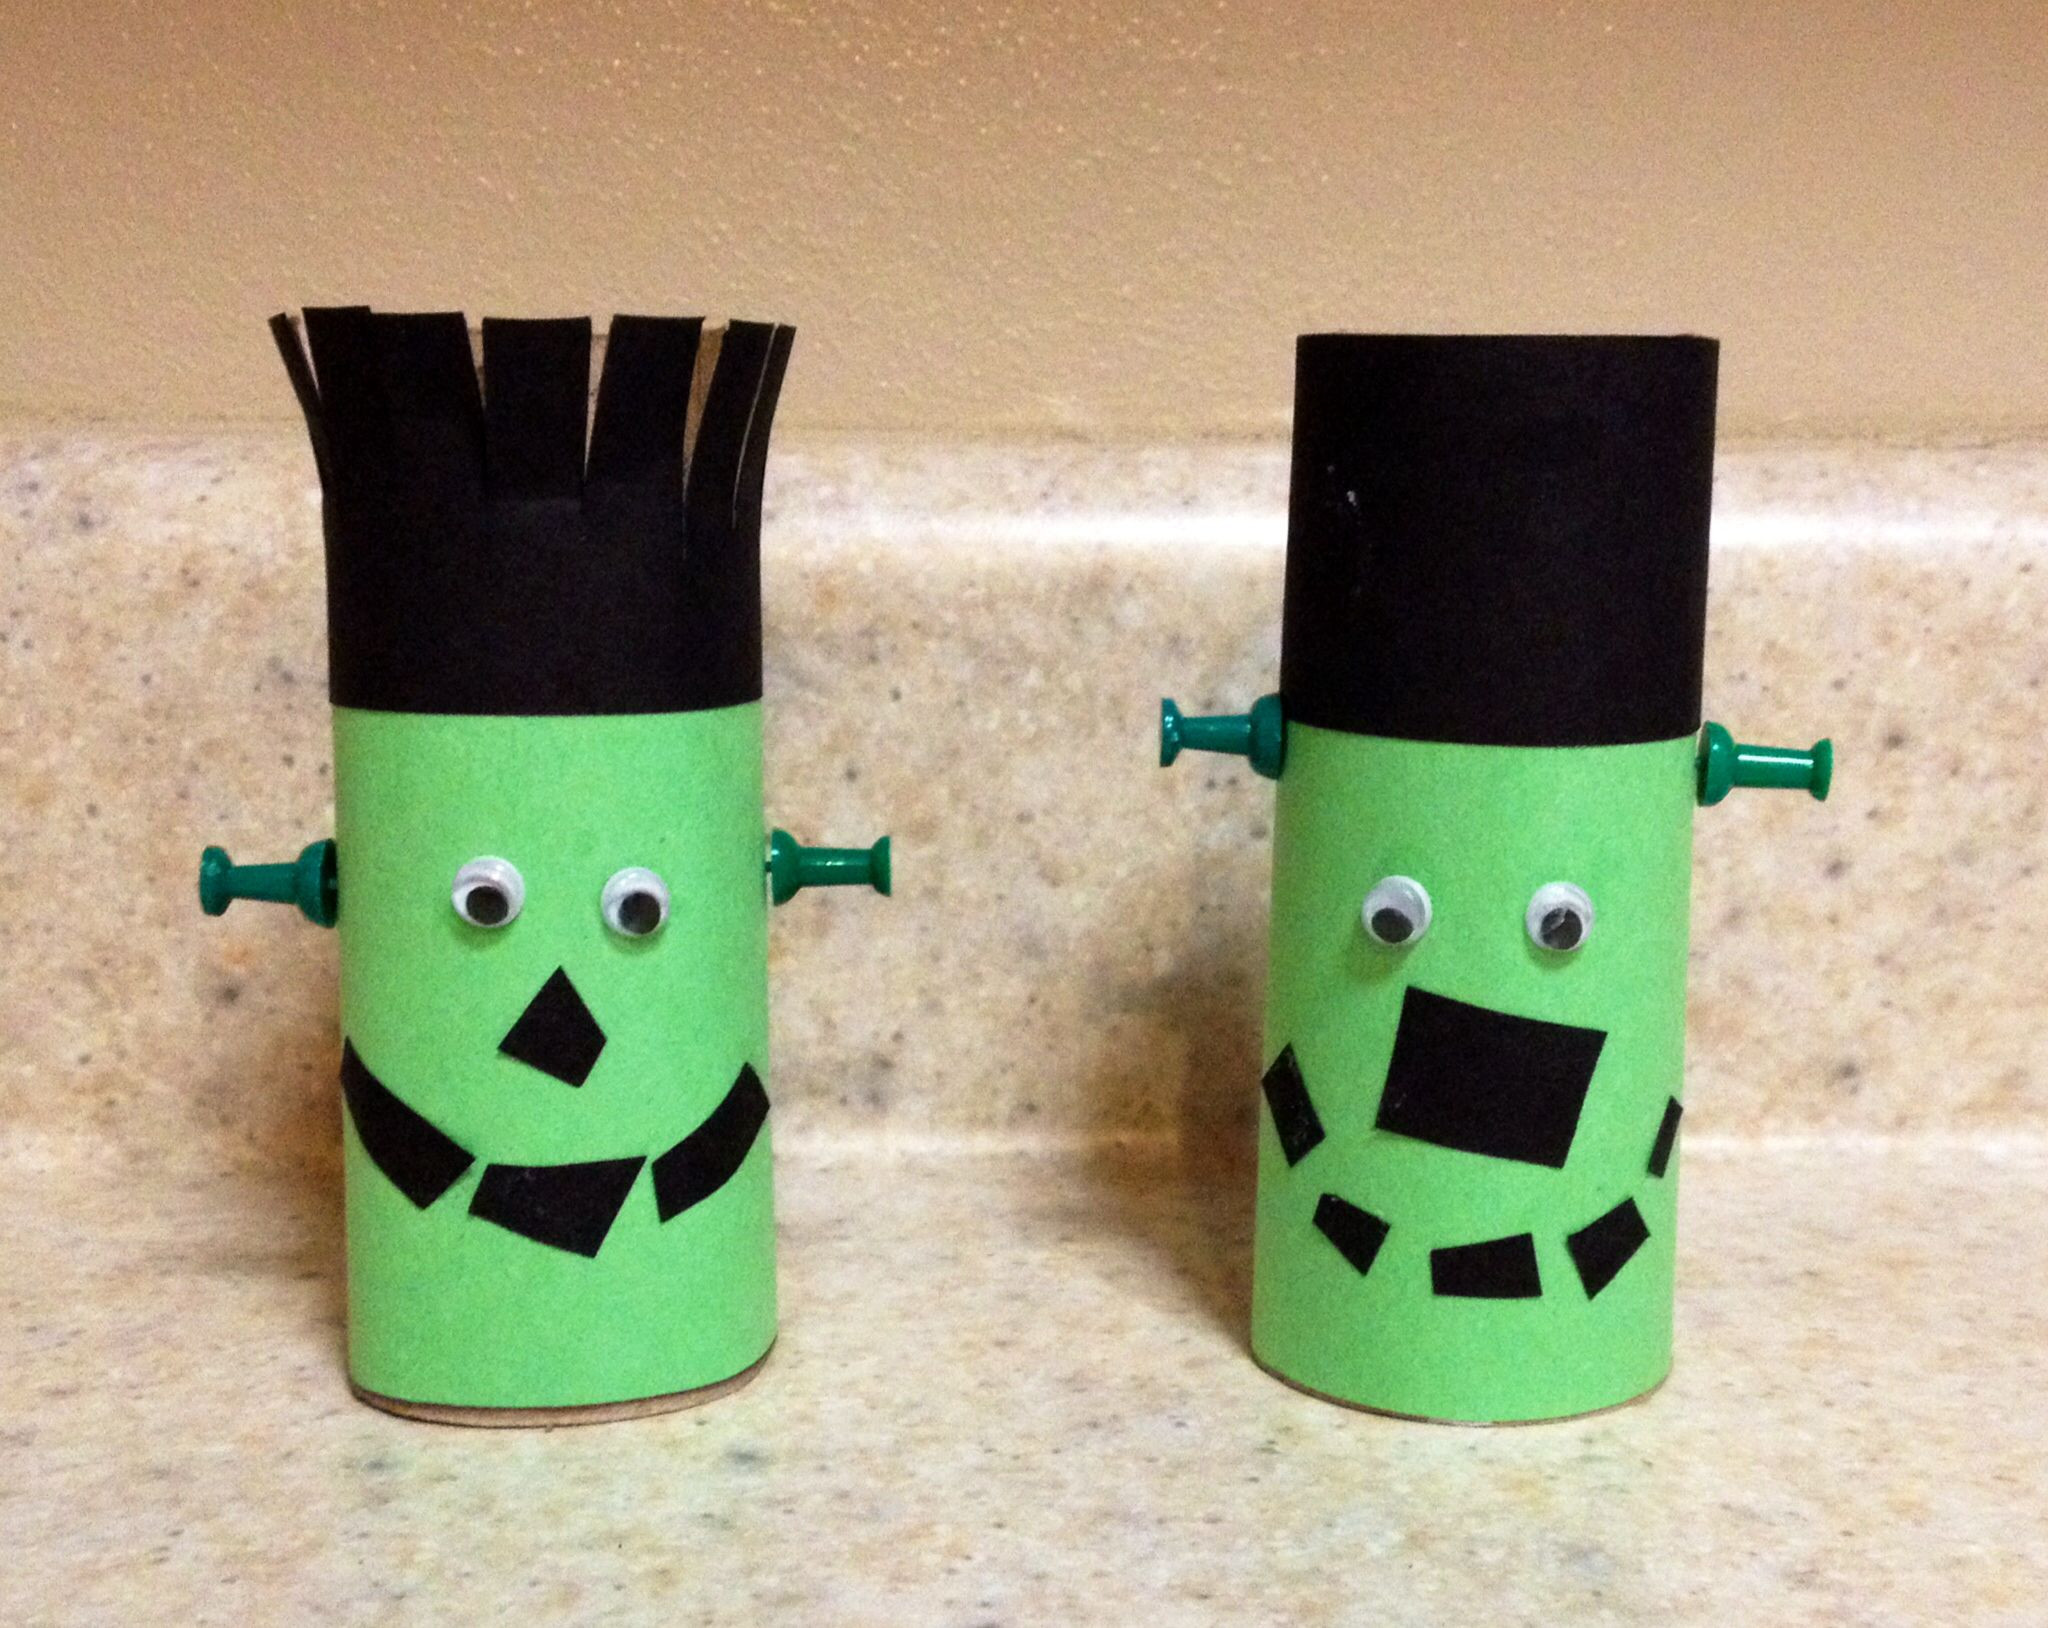 Halloween Toilet Paper Roll Crafts
 Preschool Halloween Craft Toilet Paper Roll Frankenstein